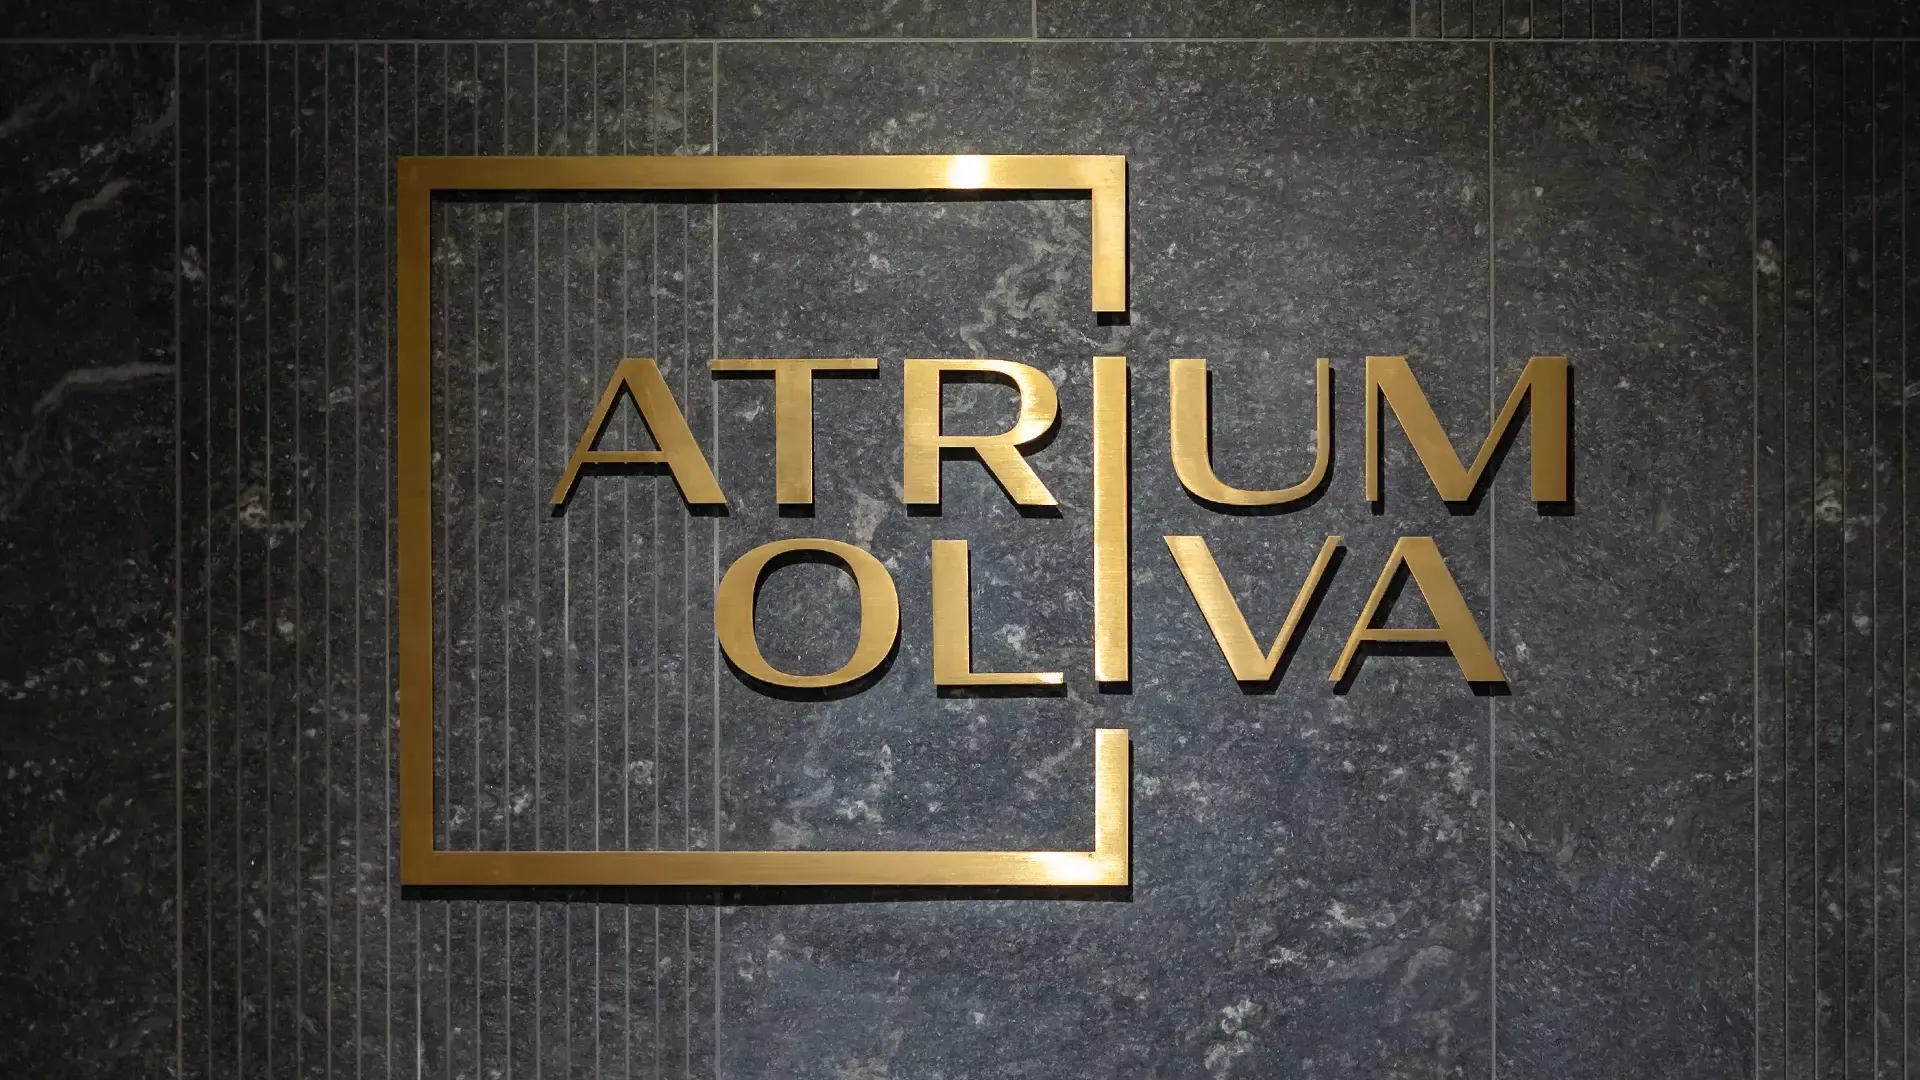 Atrium Oliva flat letters - Atrium Oliva flat letters in brushed sheet metal